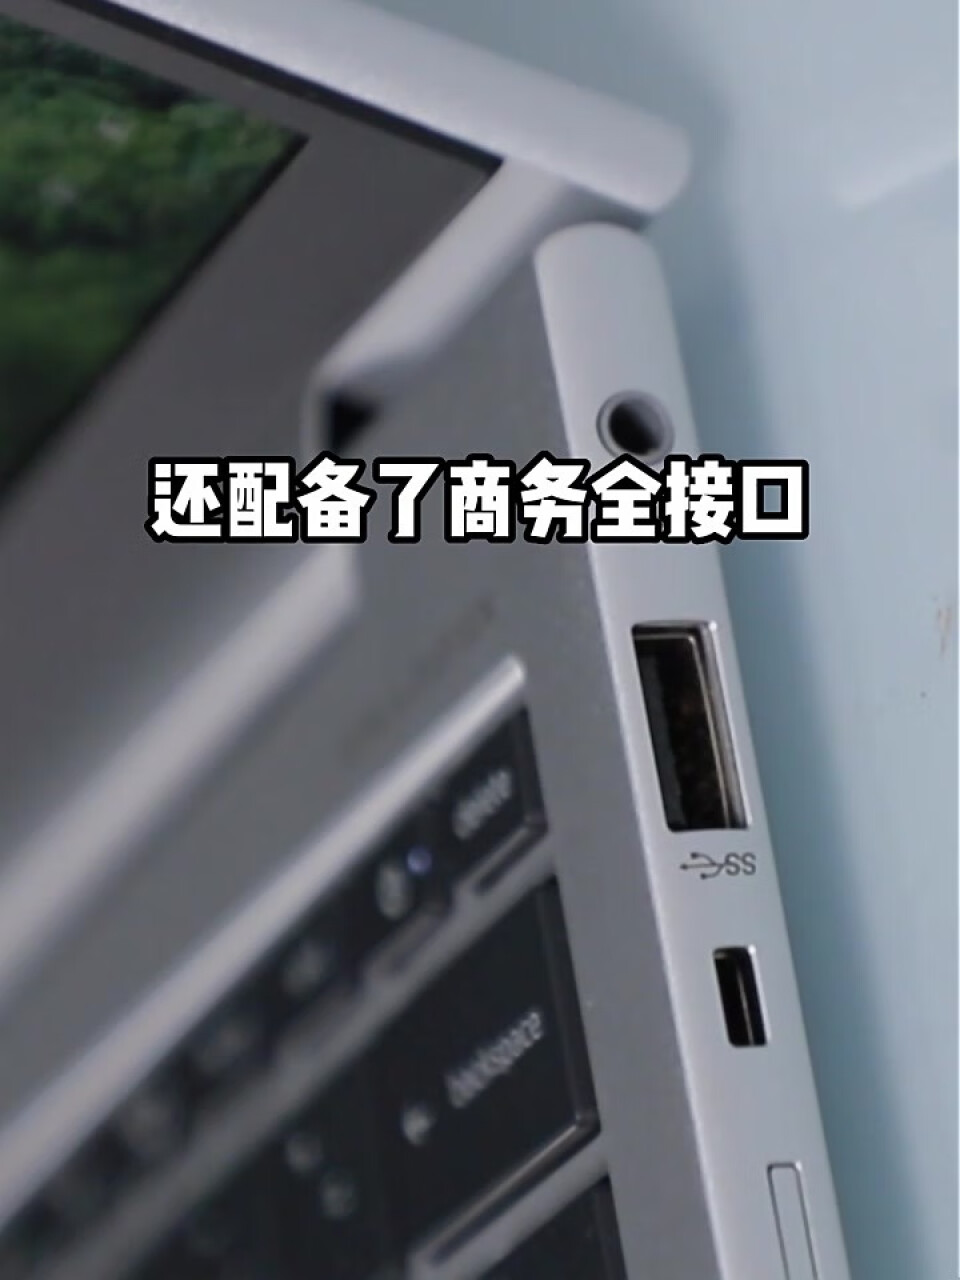 惠普(HP)战X 全新锐龙6000系列 13.3英寸高性能轻薄笔记本电脑(R7-6800U 16G 512G 16:10高色域低功耗屏)4G版(惠普(HP)战X锐龙版怎么样),第4张